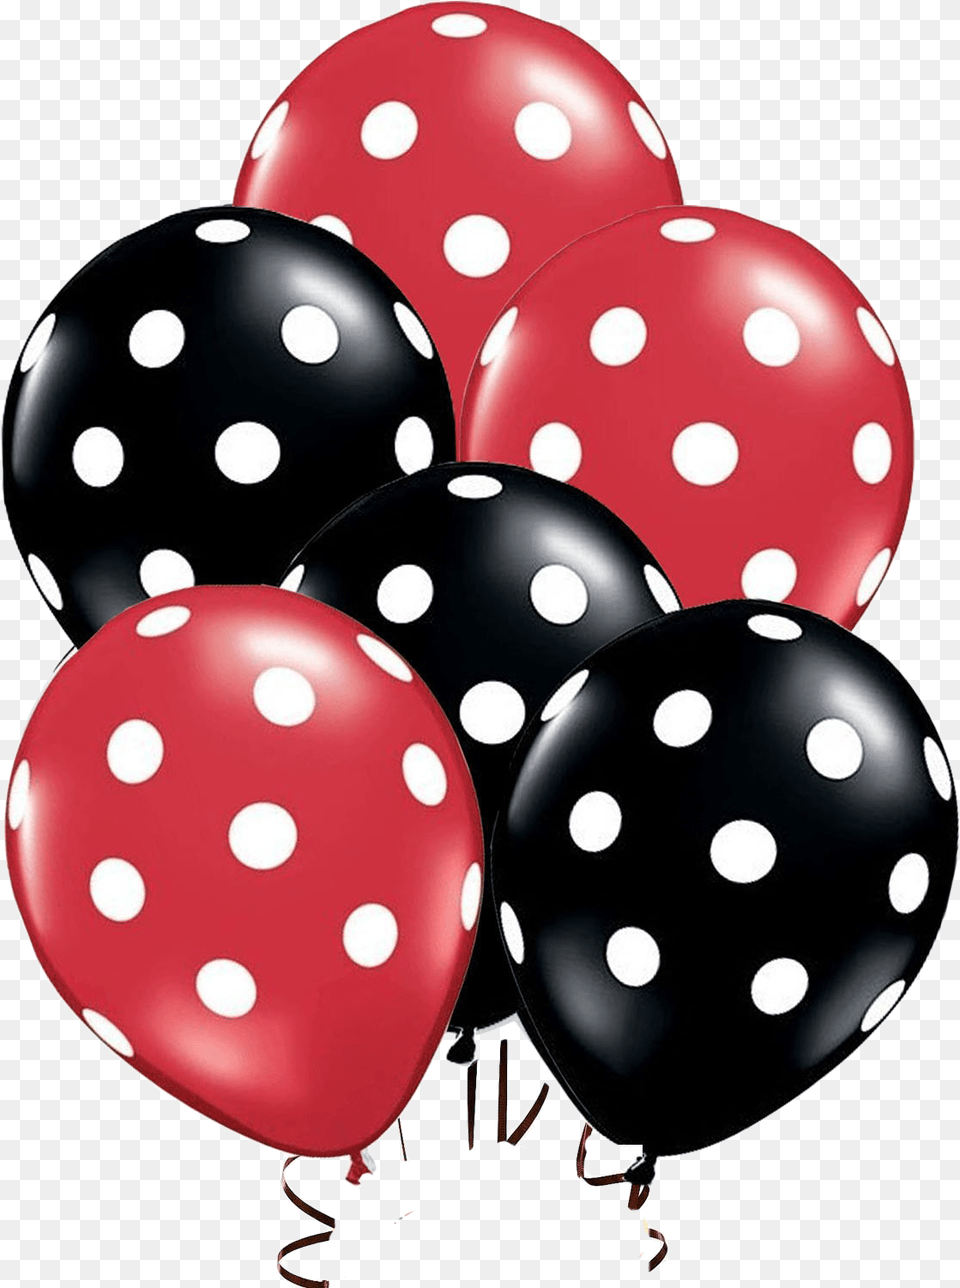 Veja Tambm Estas Ladybug Balloons, Balloon, Pattern, Polka Dot, Computer Hardware Png